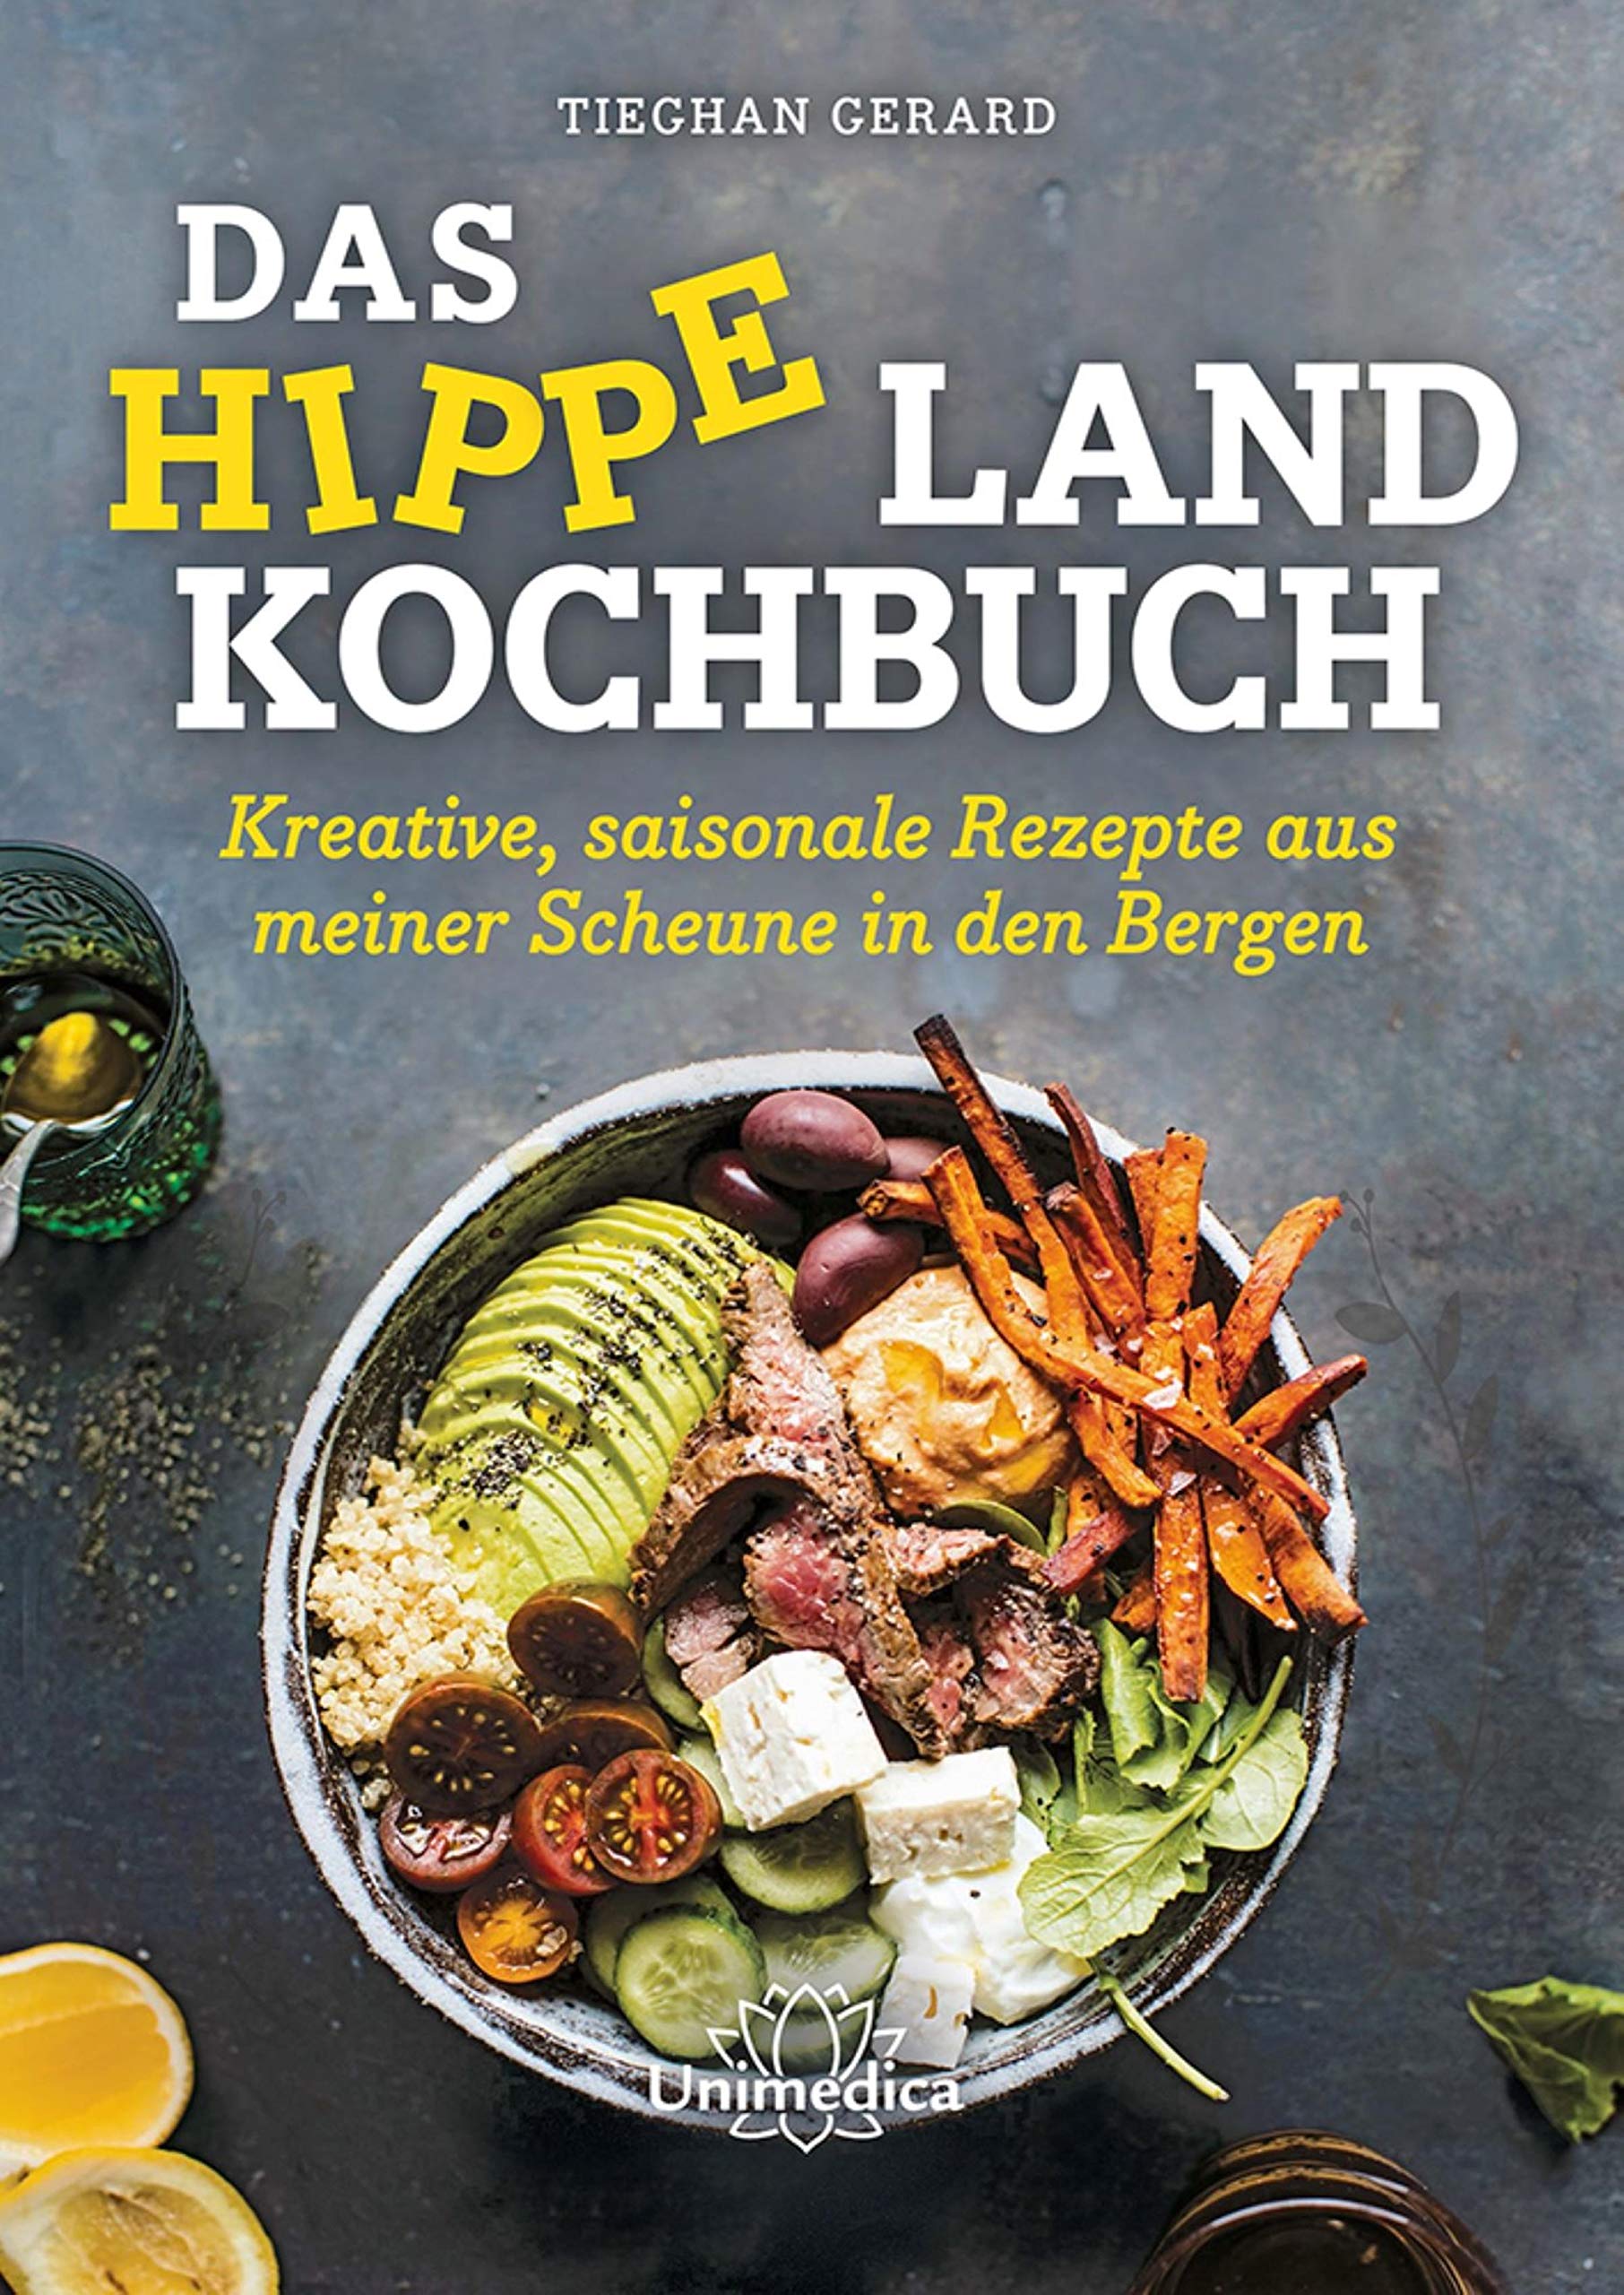 Das hippe Landkochbuch: Kreative, saisonale Rezepte aus meiner Scheune in den Bergen (German Edition)